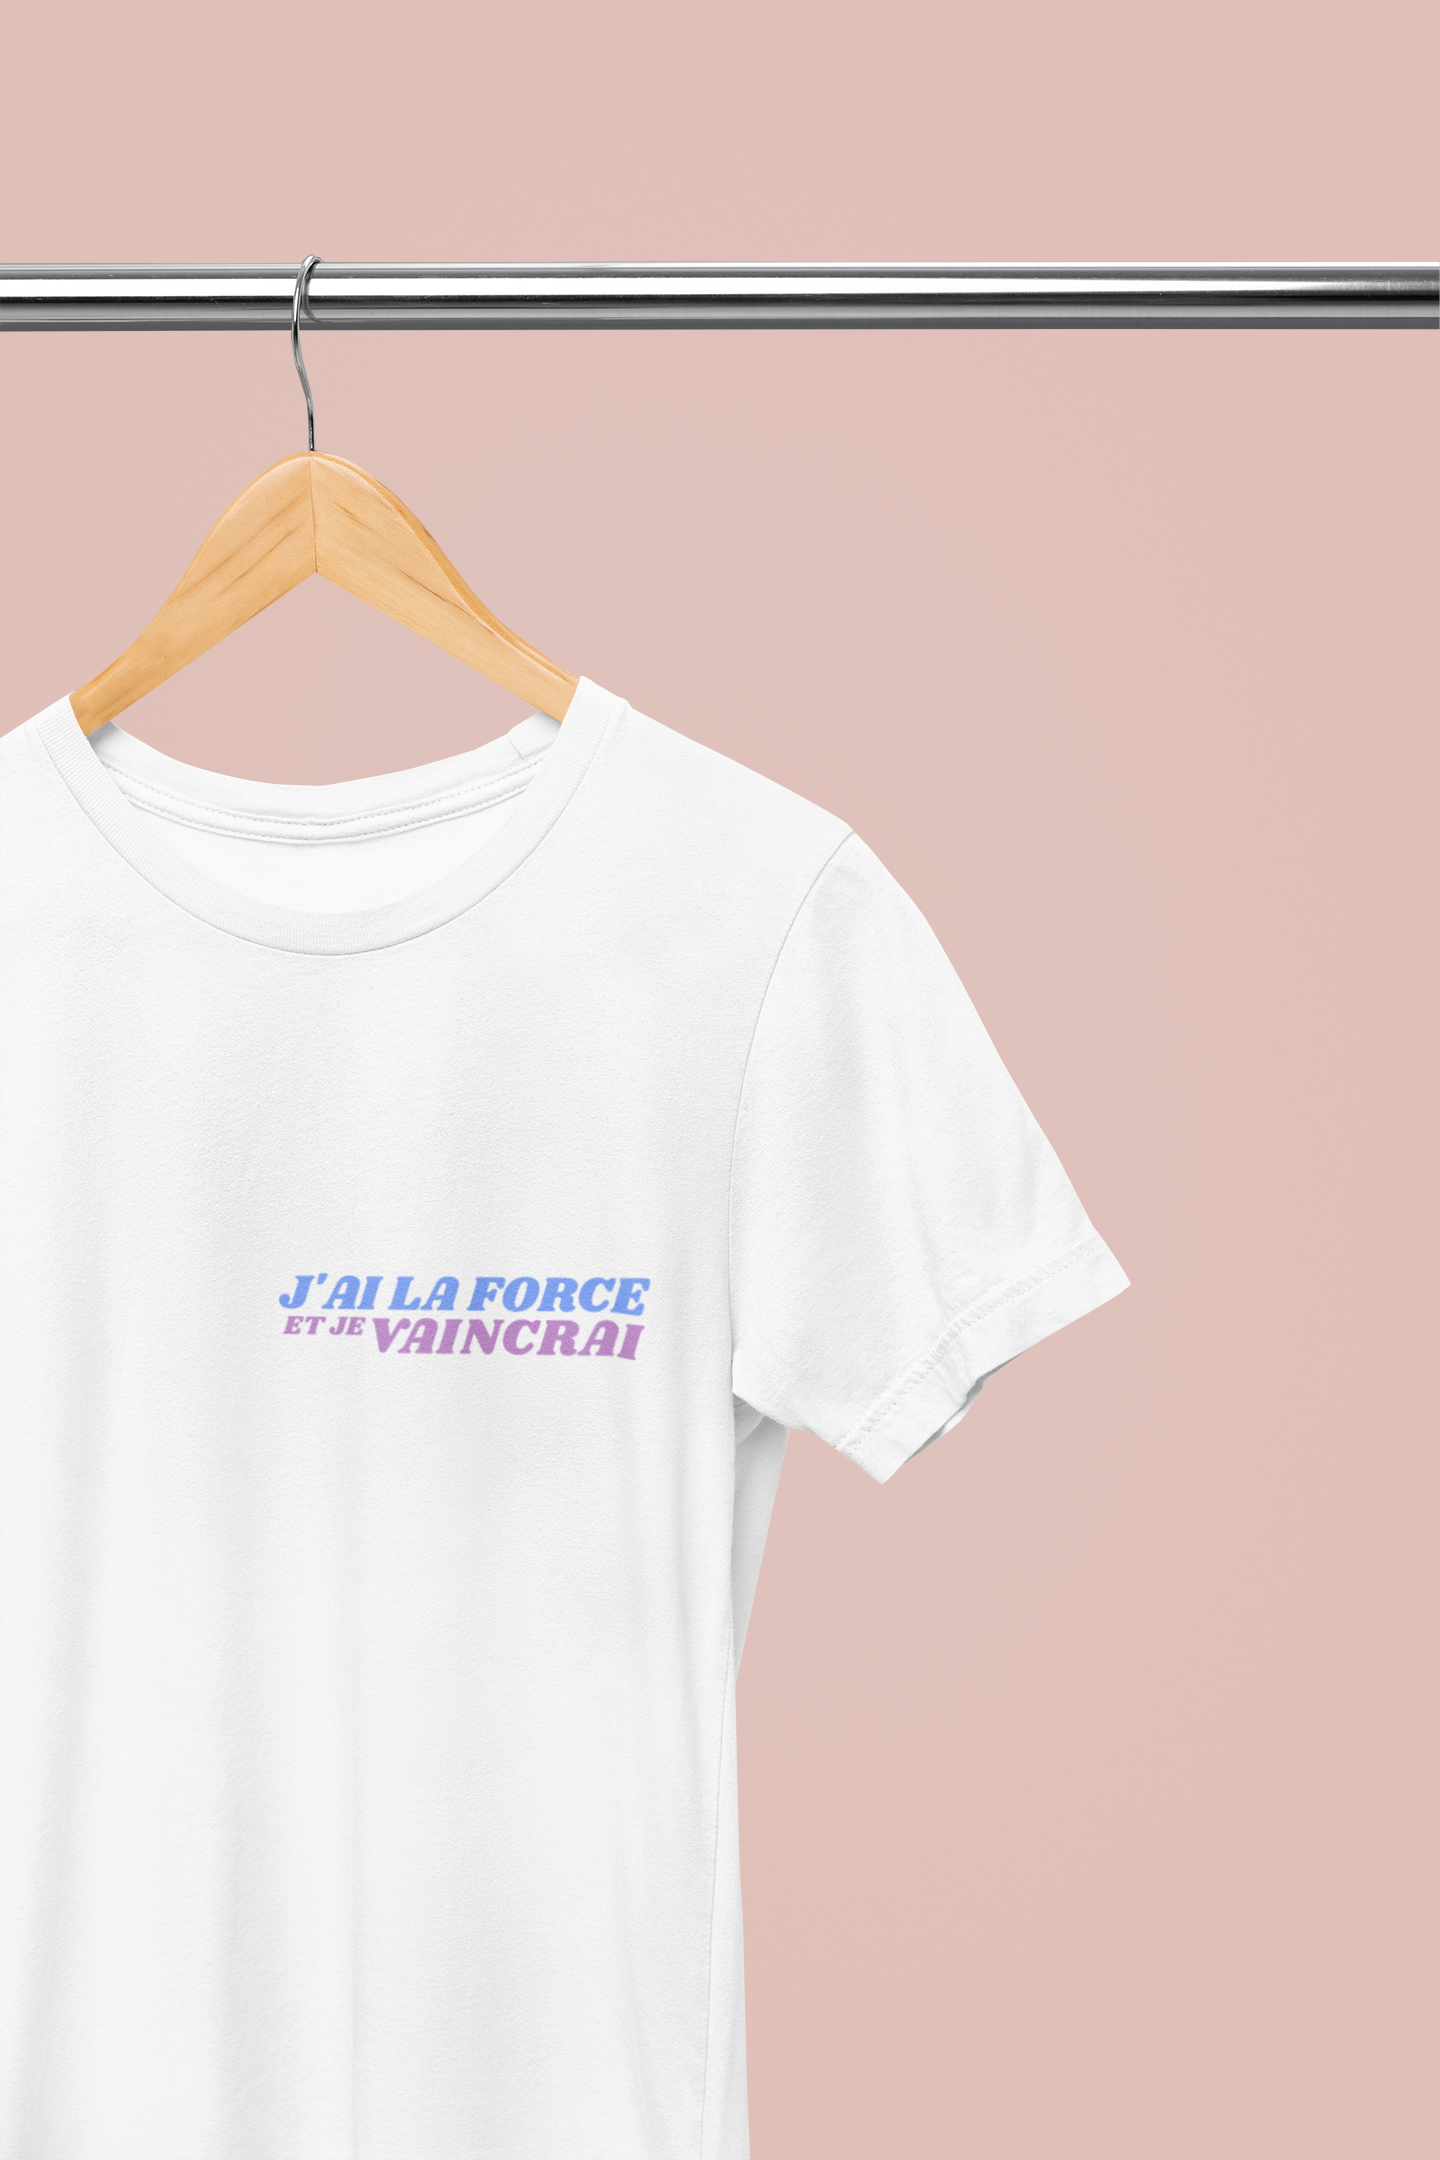 T-shirt à imprimer -J'AI LA FORCE- pour adulte